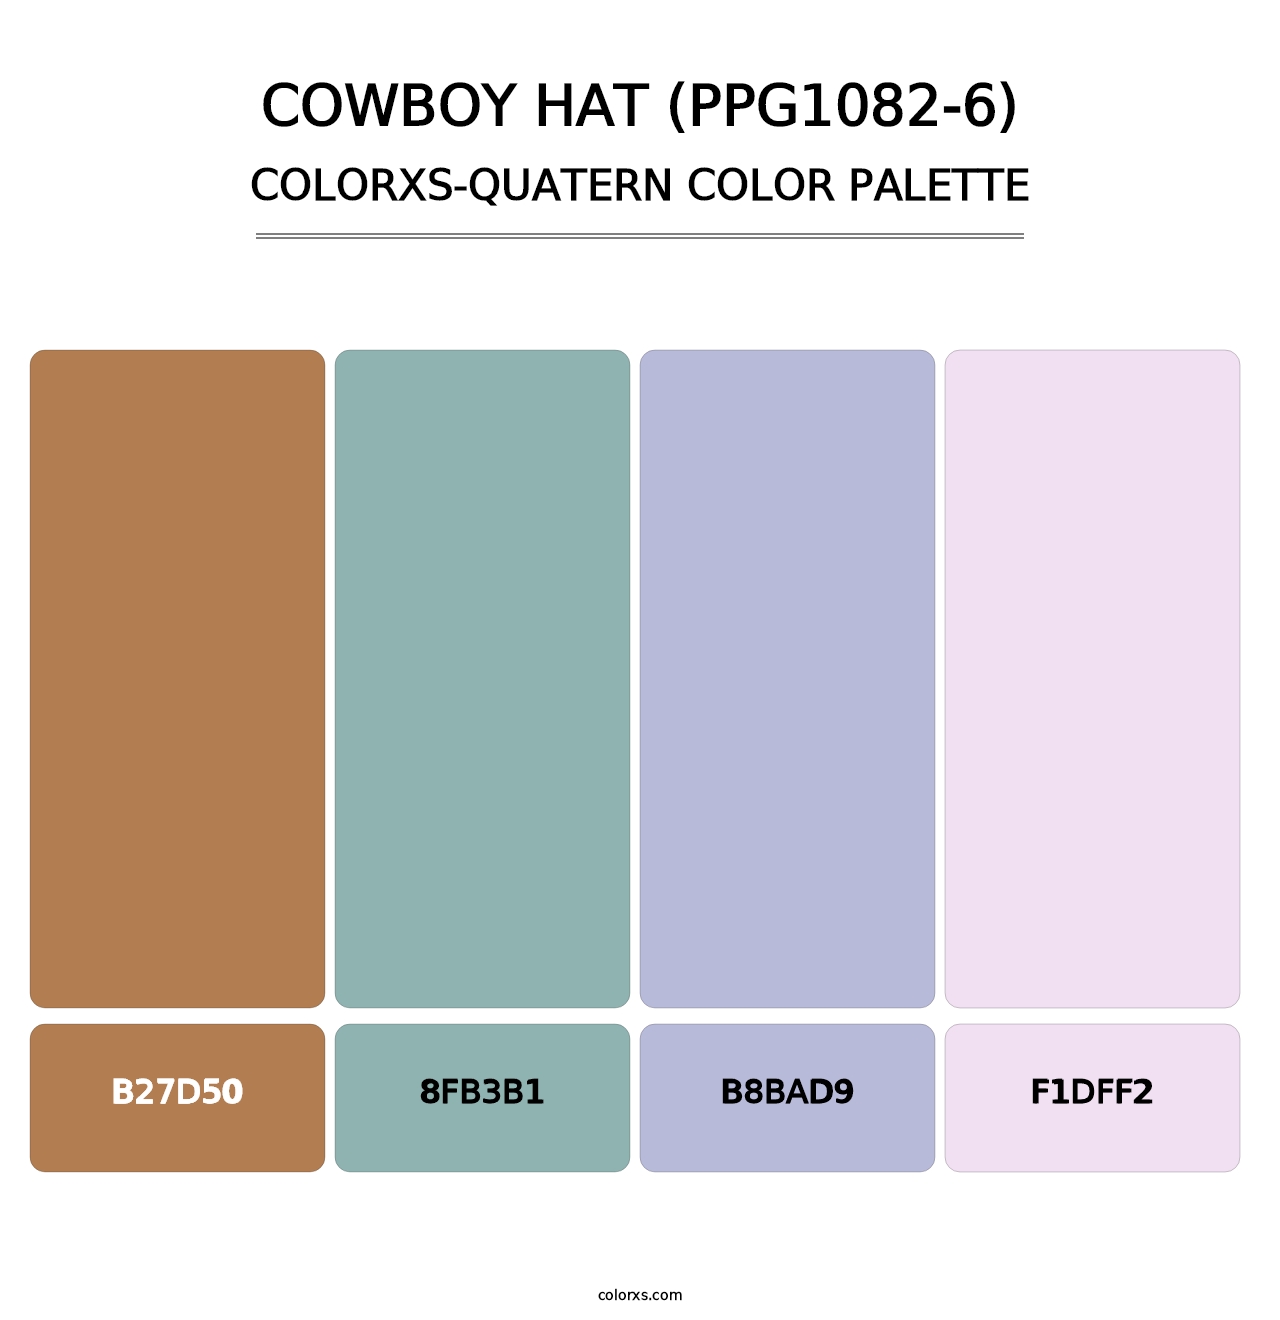 Cowboy Hat (PPG1082-6) - Colorxs Quatern Palette